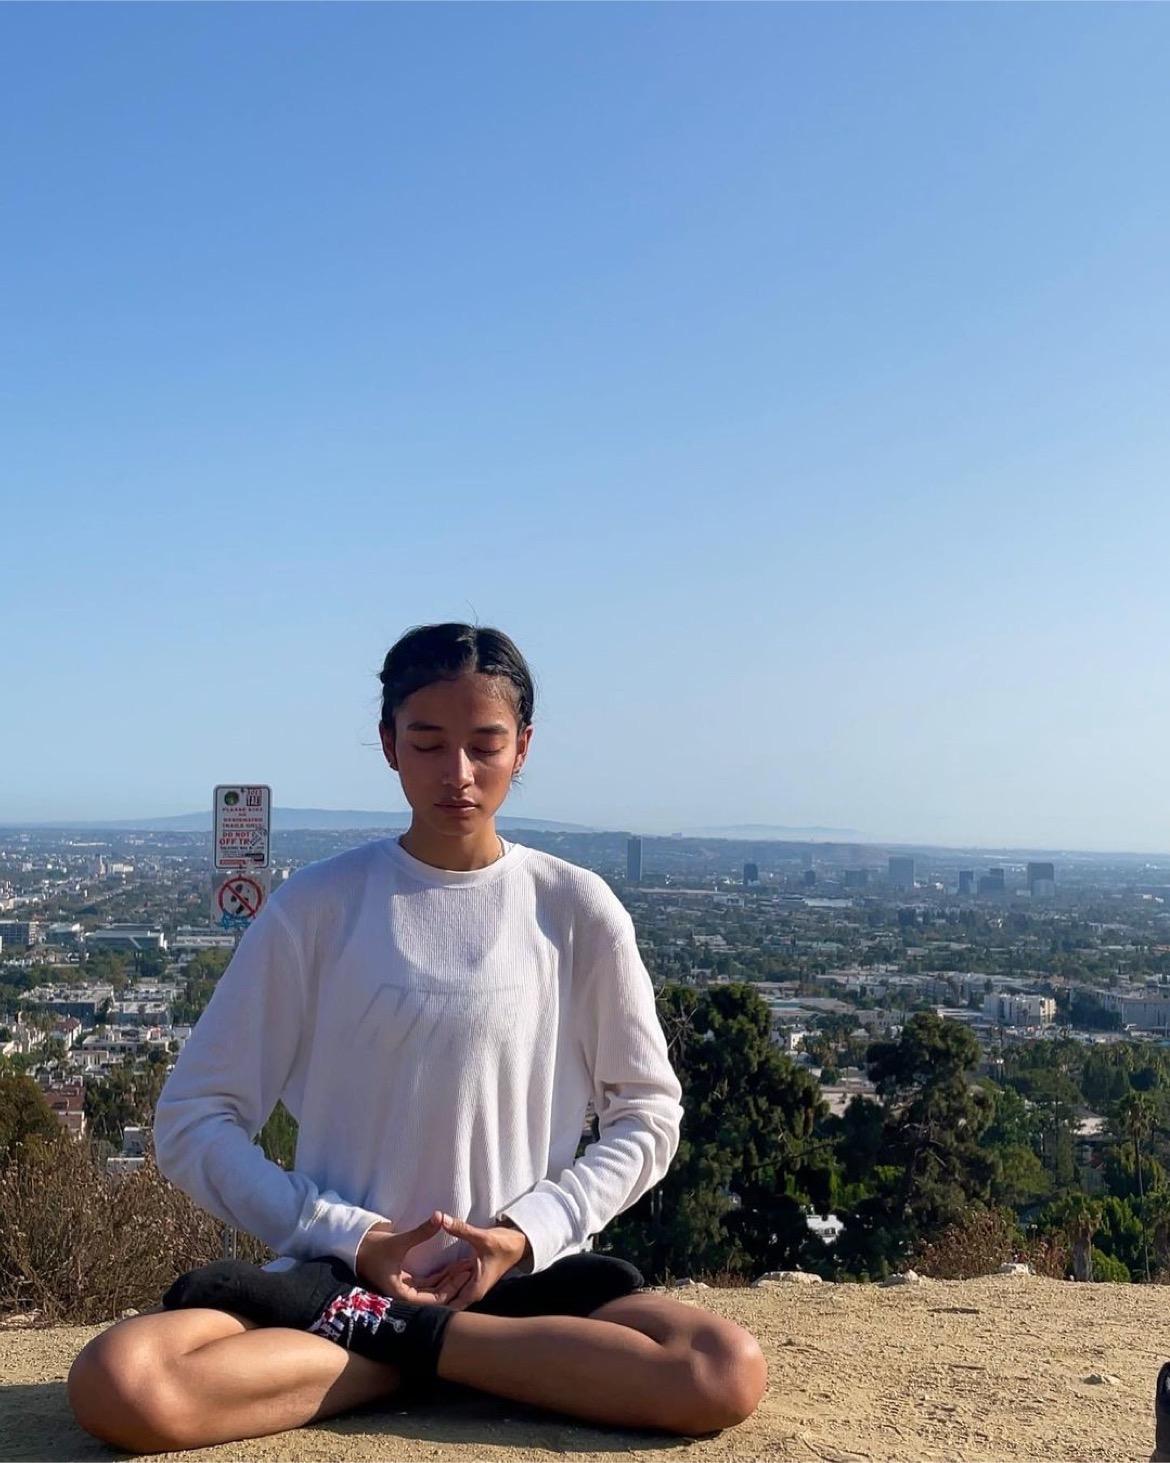 Sumaya Hazarika practicing the meditative exercise of Falun Gong at Runyon Canyon in Los Angeles. (Courtesy of Sumaya Hazarika)